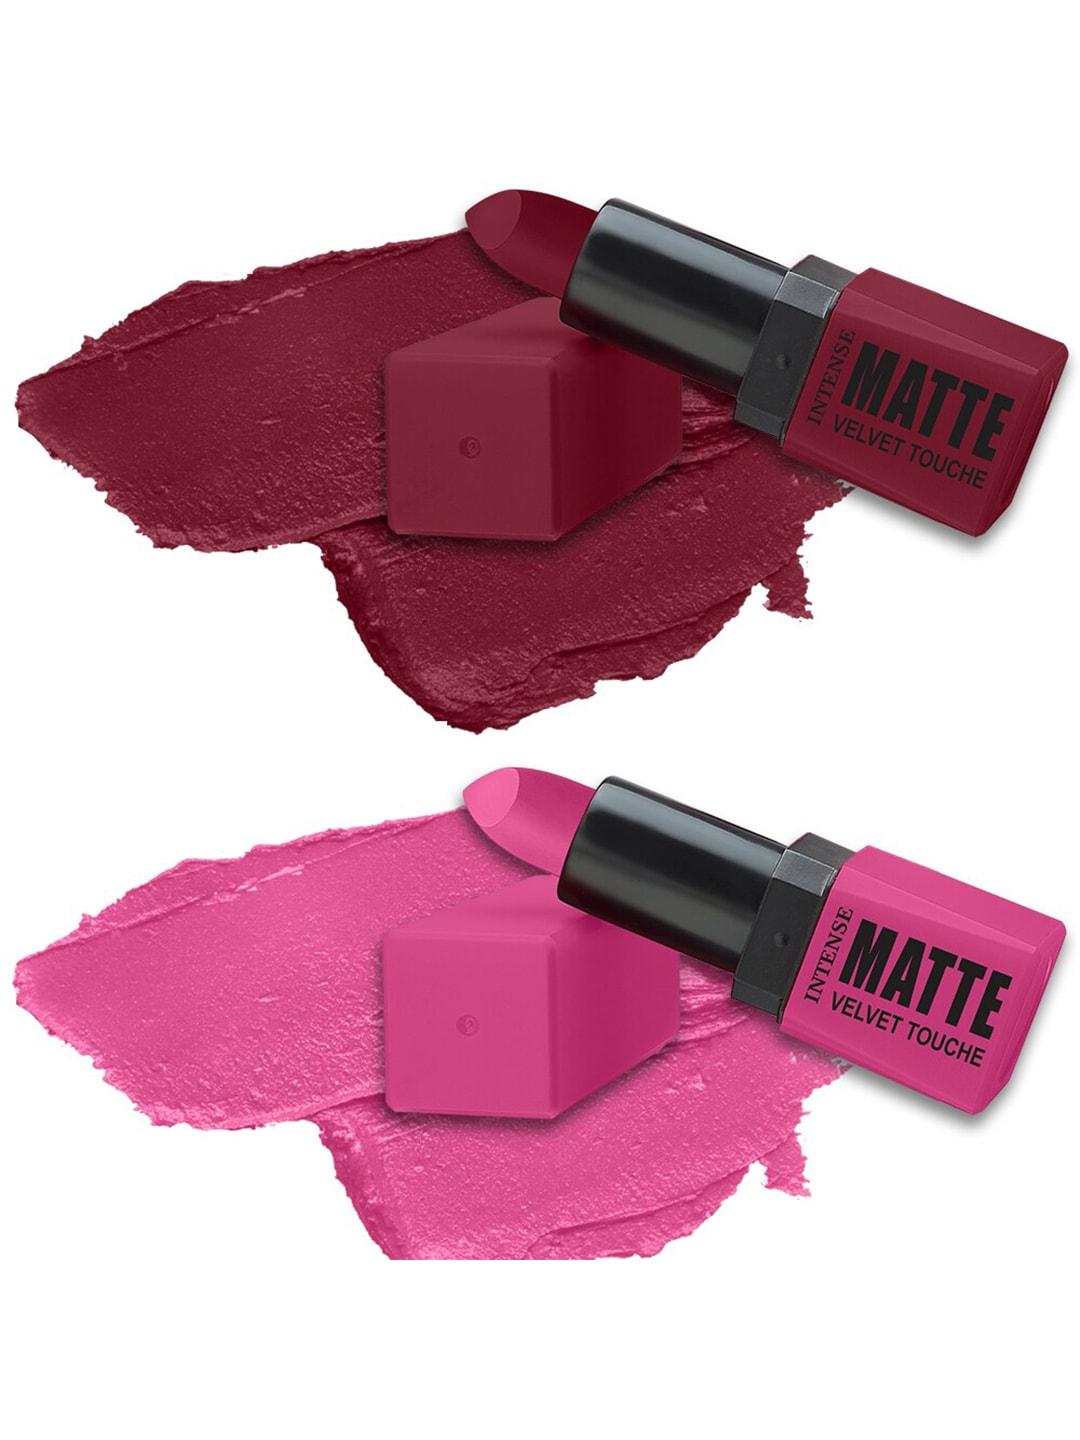 forsure set of 2 intense matte velvet touche long lasting lipsticks 3.5g each - 309 & 304